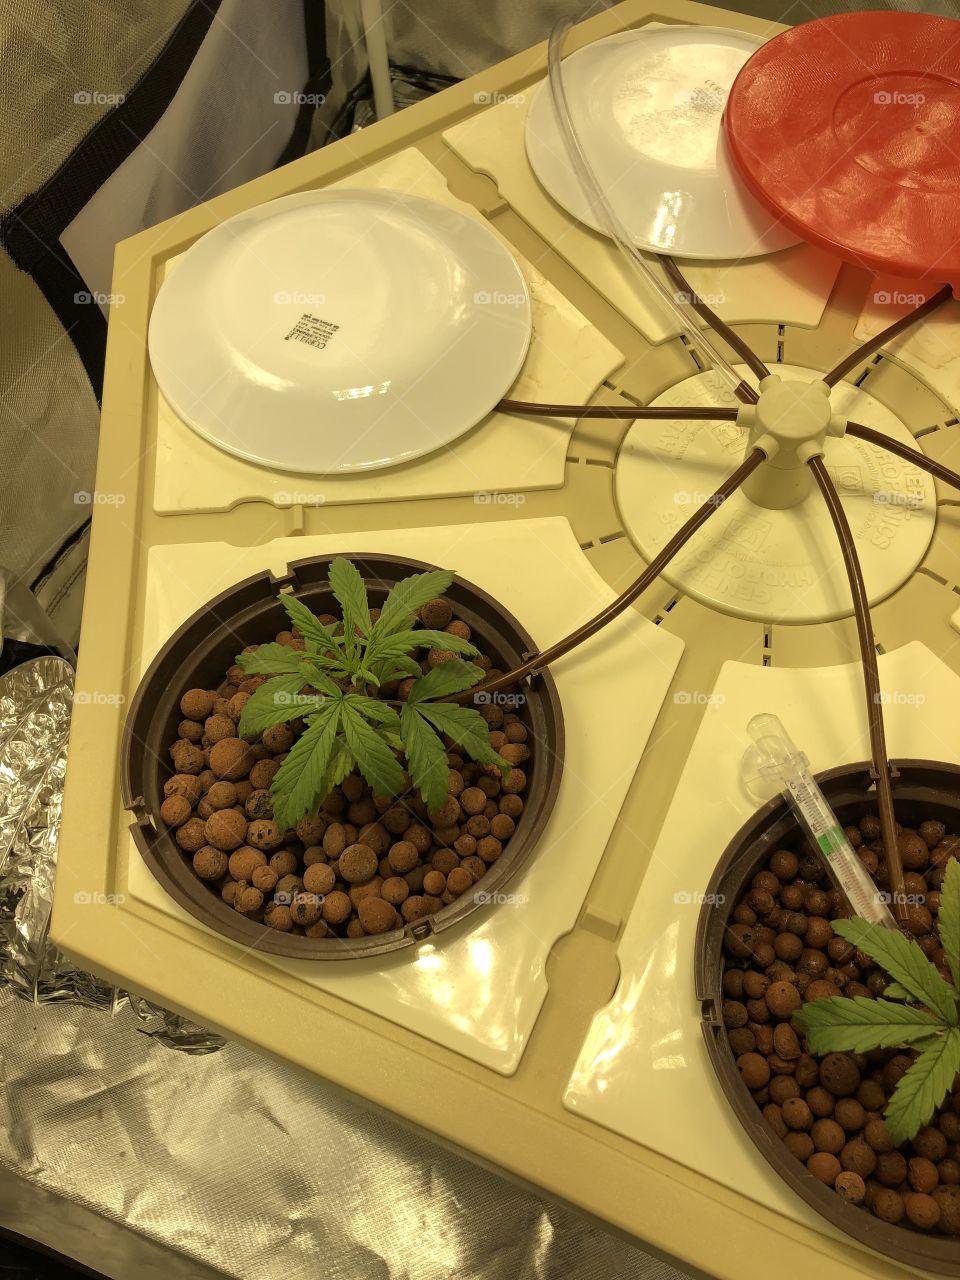 2 cannabis seedlings - May 27, 2018